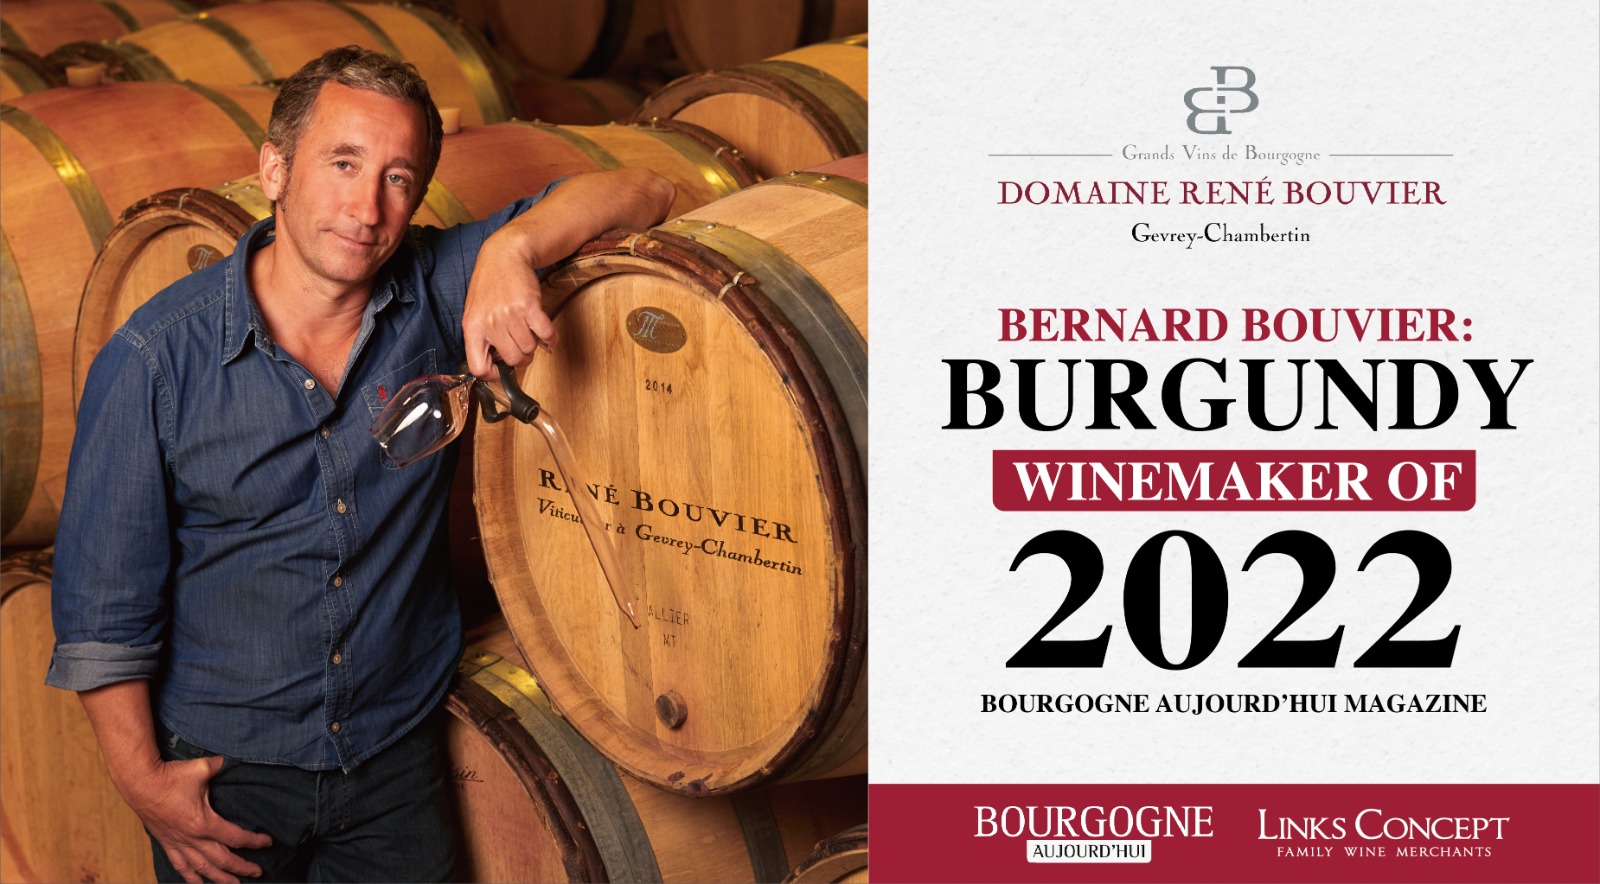 恭喜Rene Bouvier庄主Bernard Bouvier获得Bourgogne Aujourd'hui Magazine评选的“Burgundy Winemaker of 2022”称号！